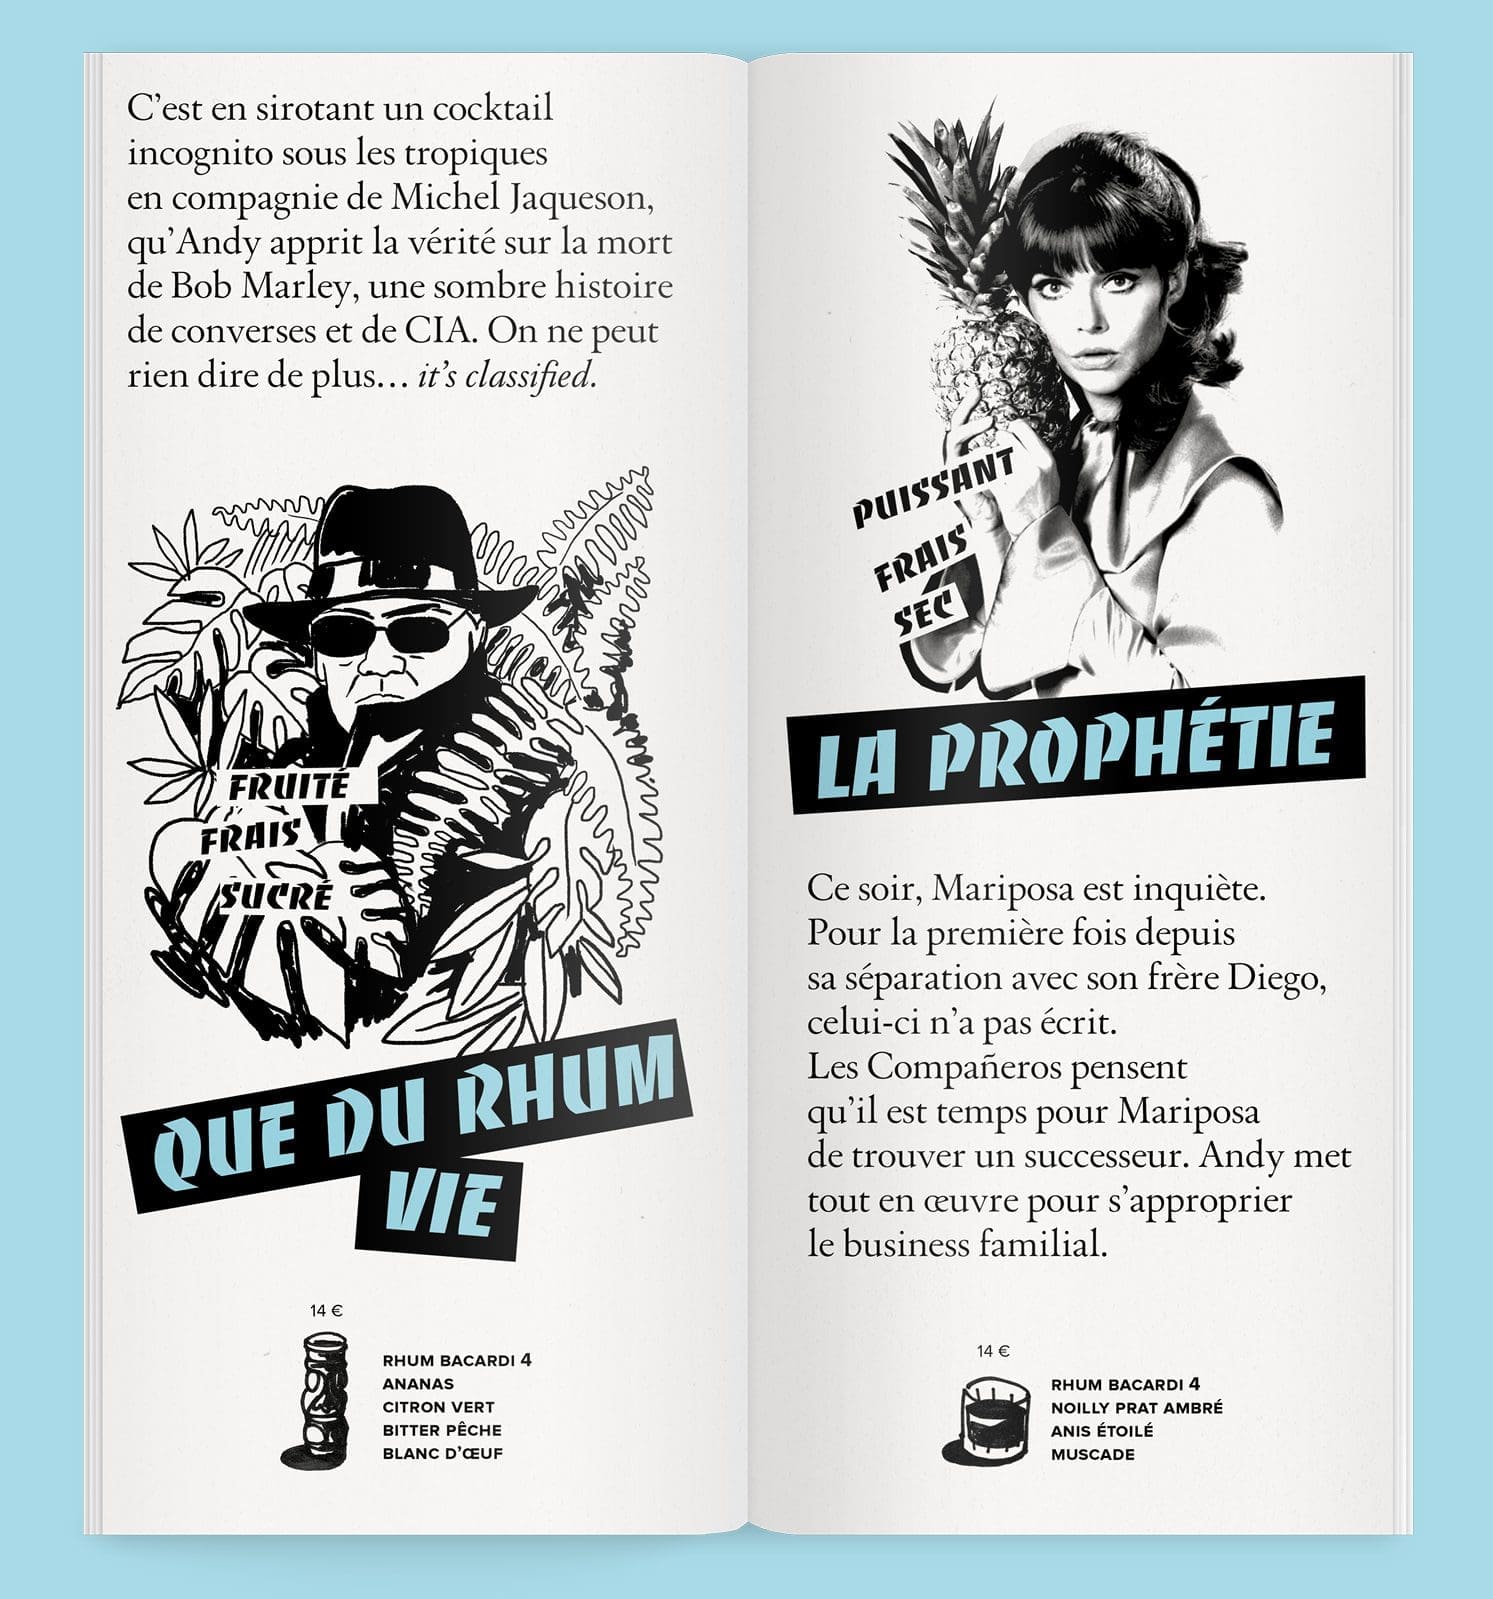 Que du Rhum Vie, La Prophétie, double page de lacarte de cocktail pour Andy Wahloo, signé IchetKar